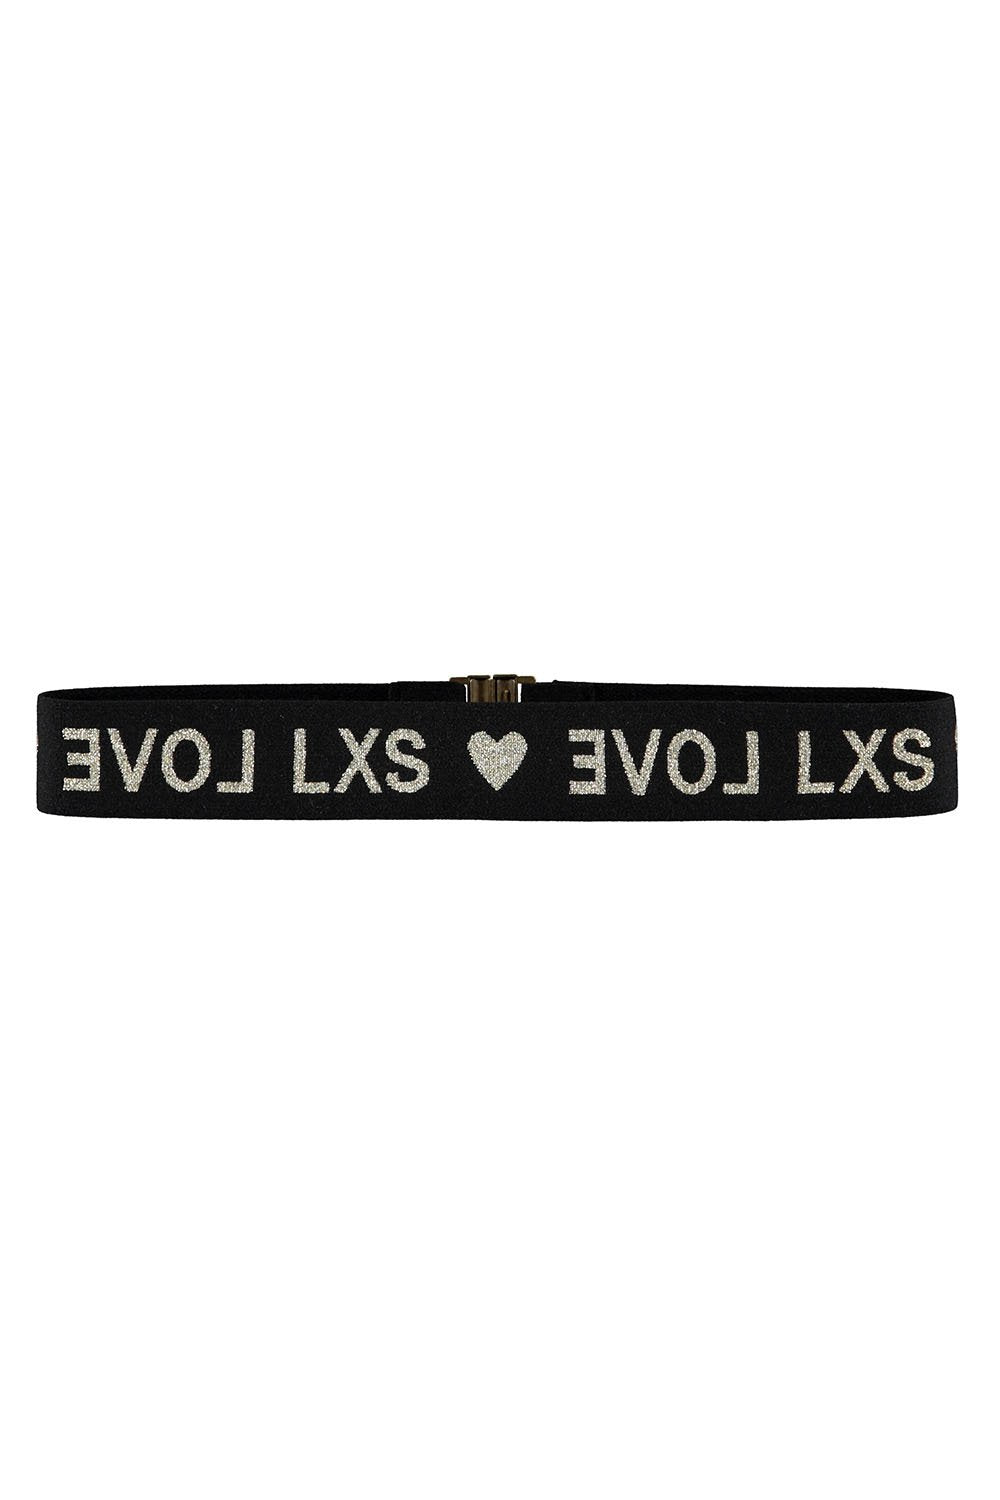 Meisjes Elastic belt LXS LOVE van LOOXS 10sixteen in de kleur black in maat 152/176.